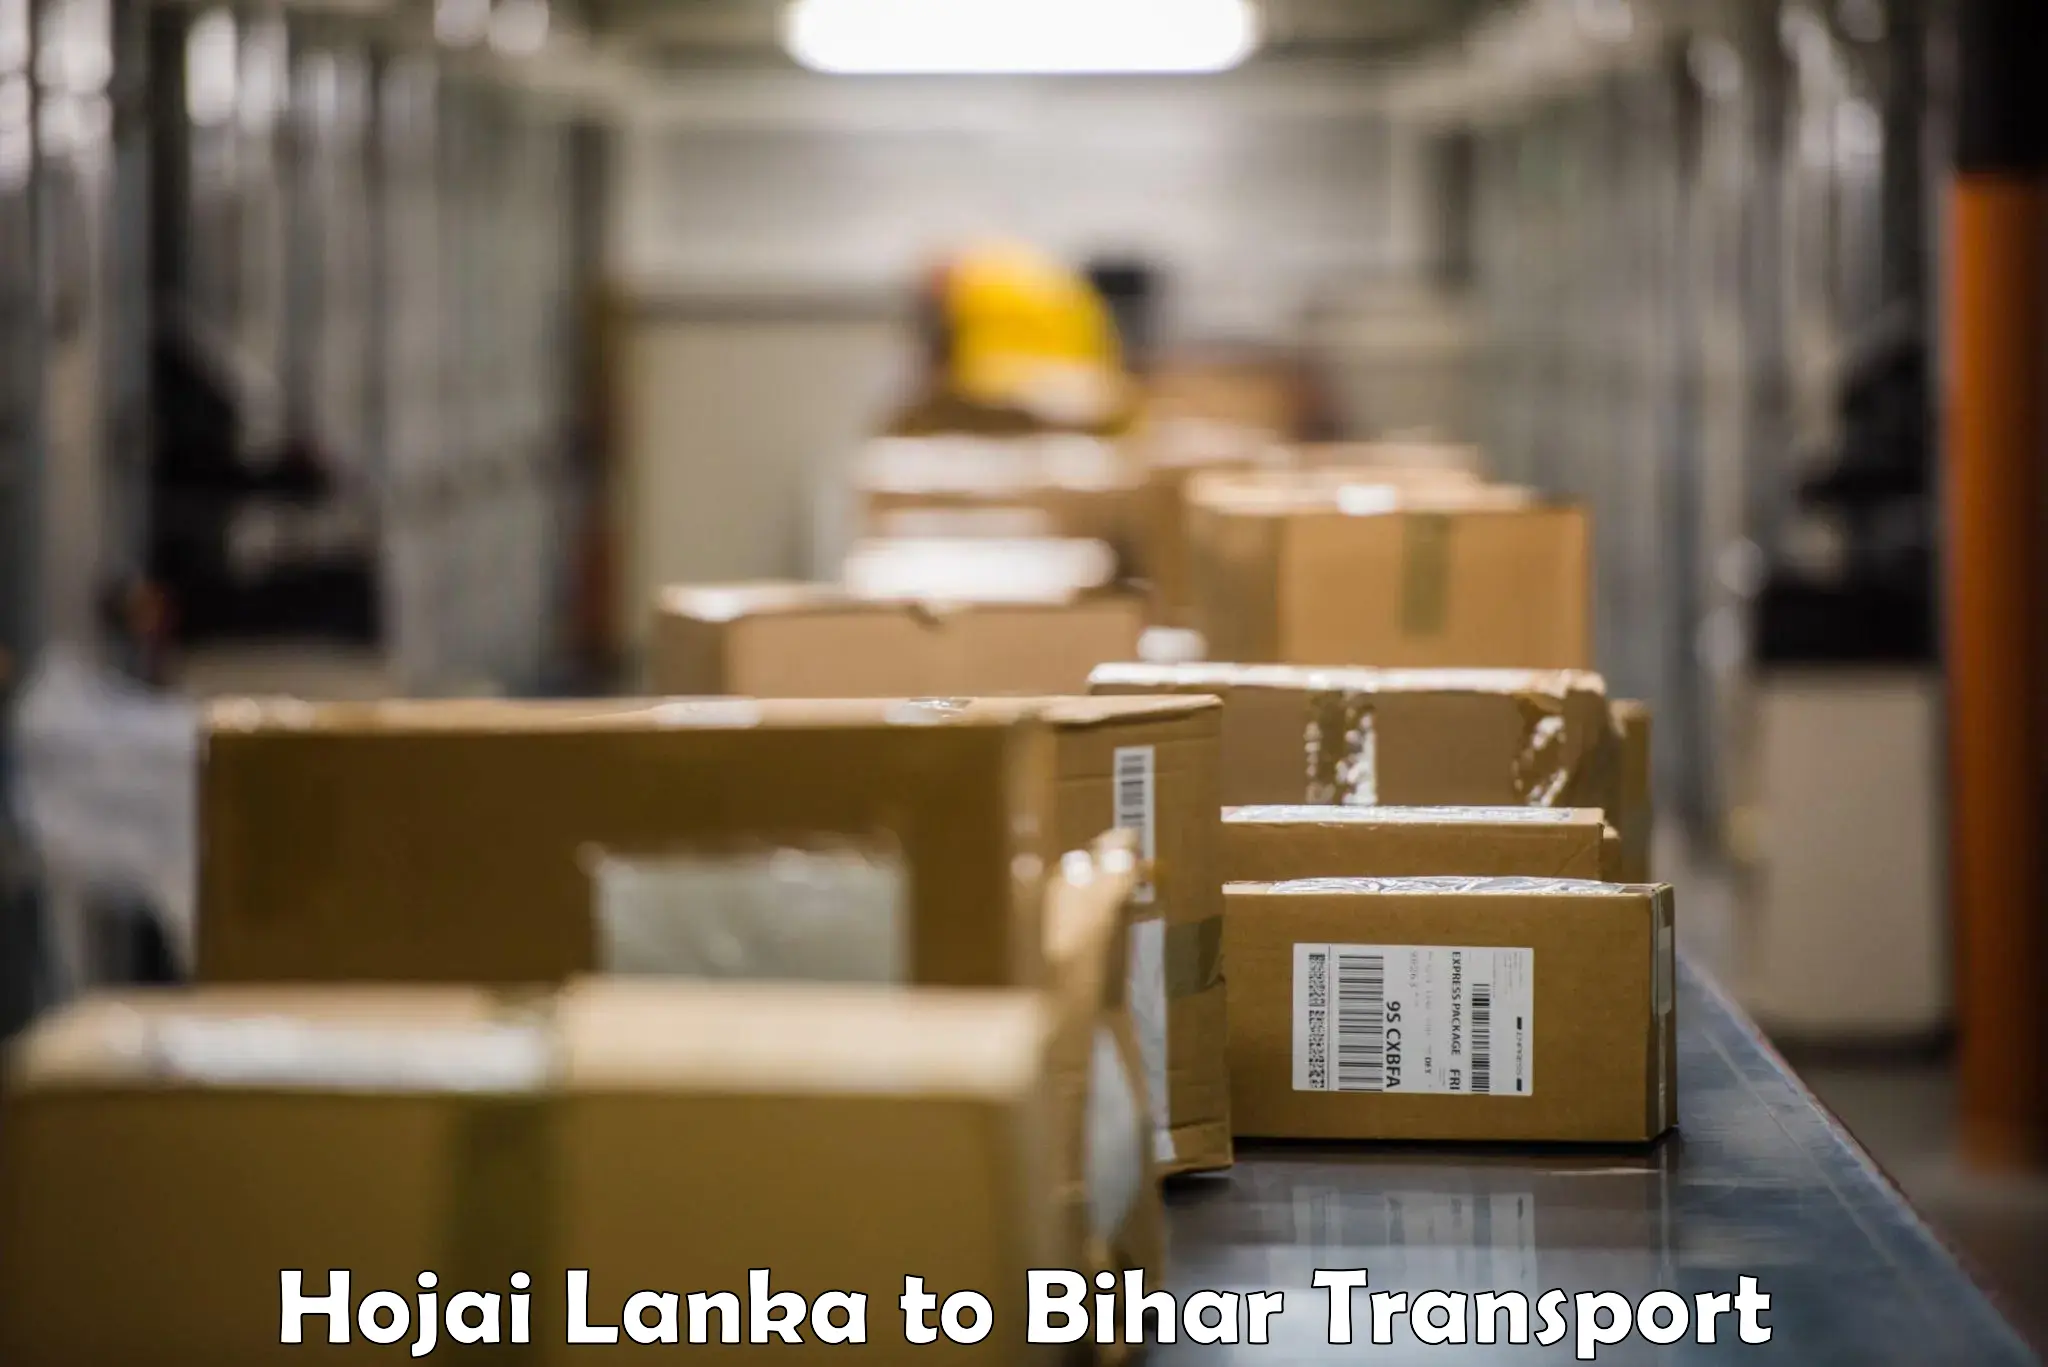 Daily parcel service transport Hojai Lanka to Darbhanga